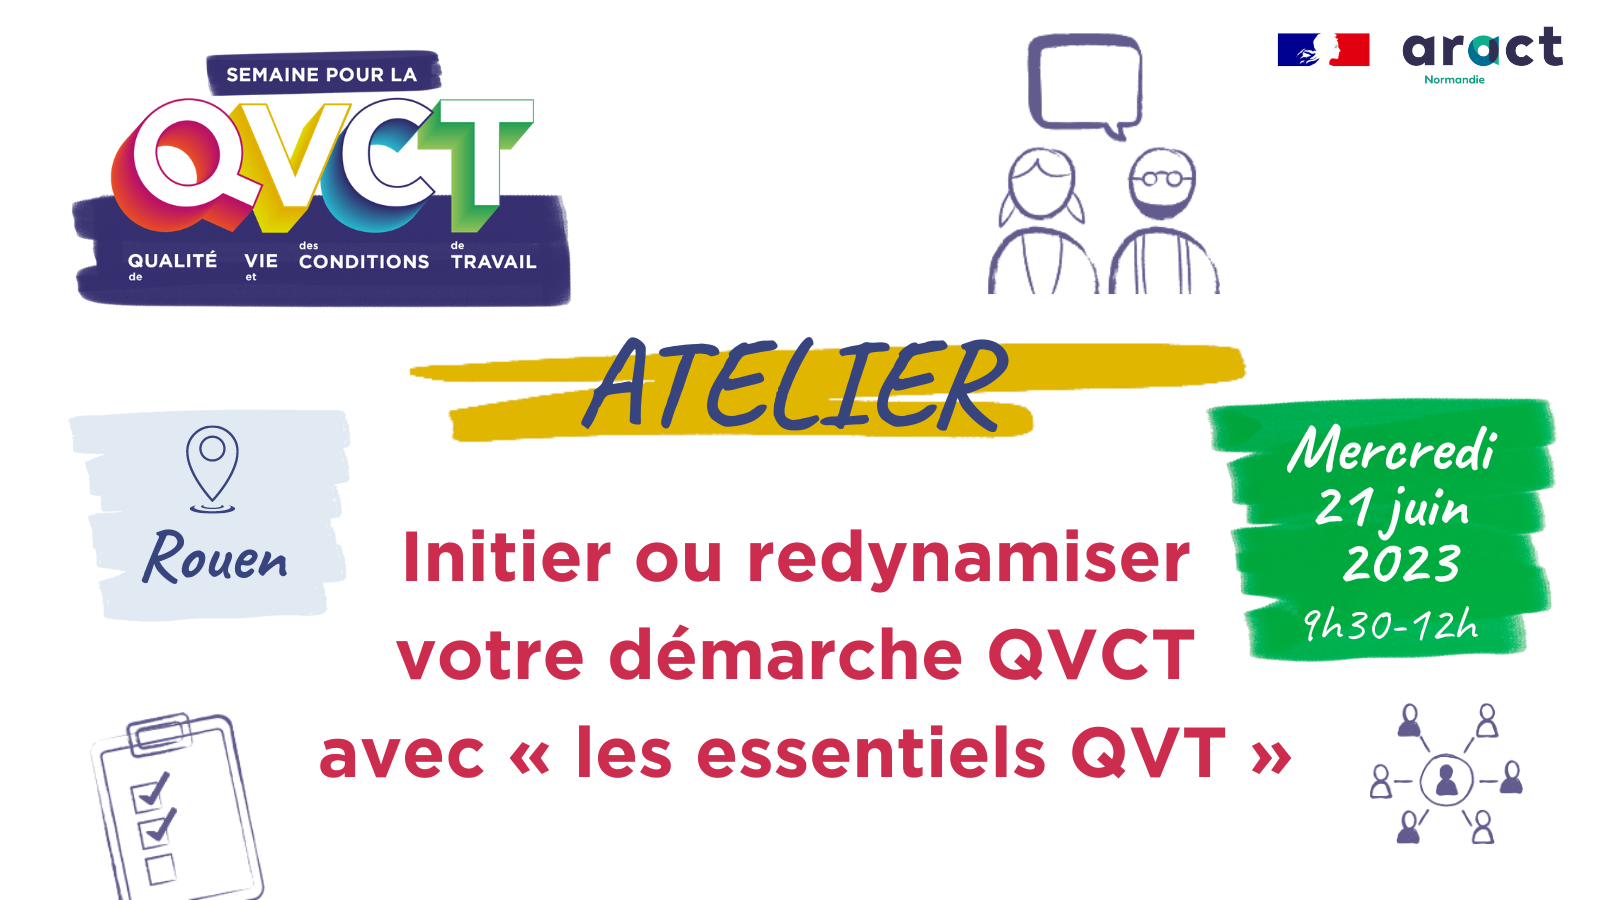 Atelier - Initier ou redynamiser votre démarche QVCT avec Les essentiels QVT - Rouen